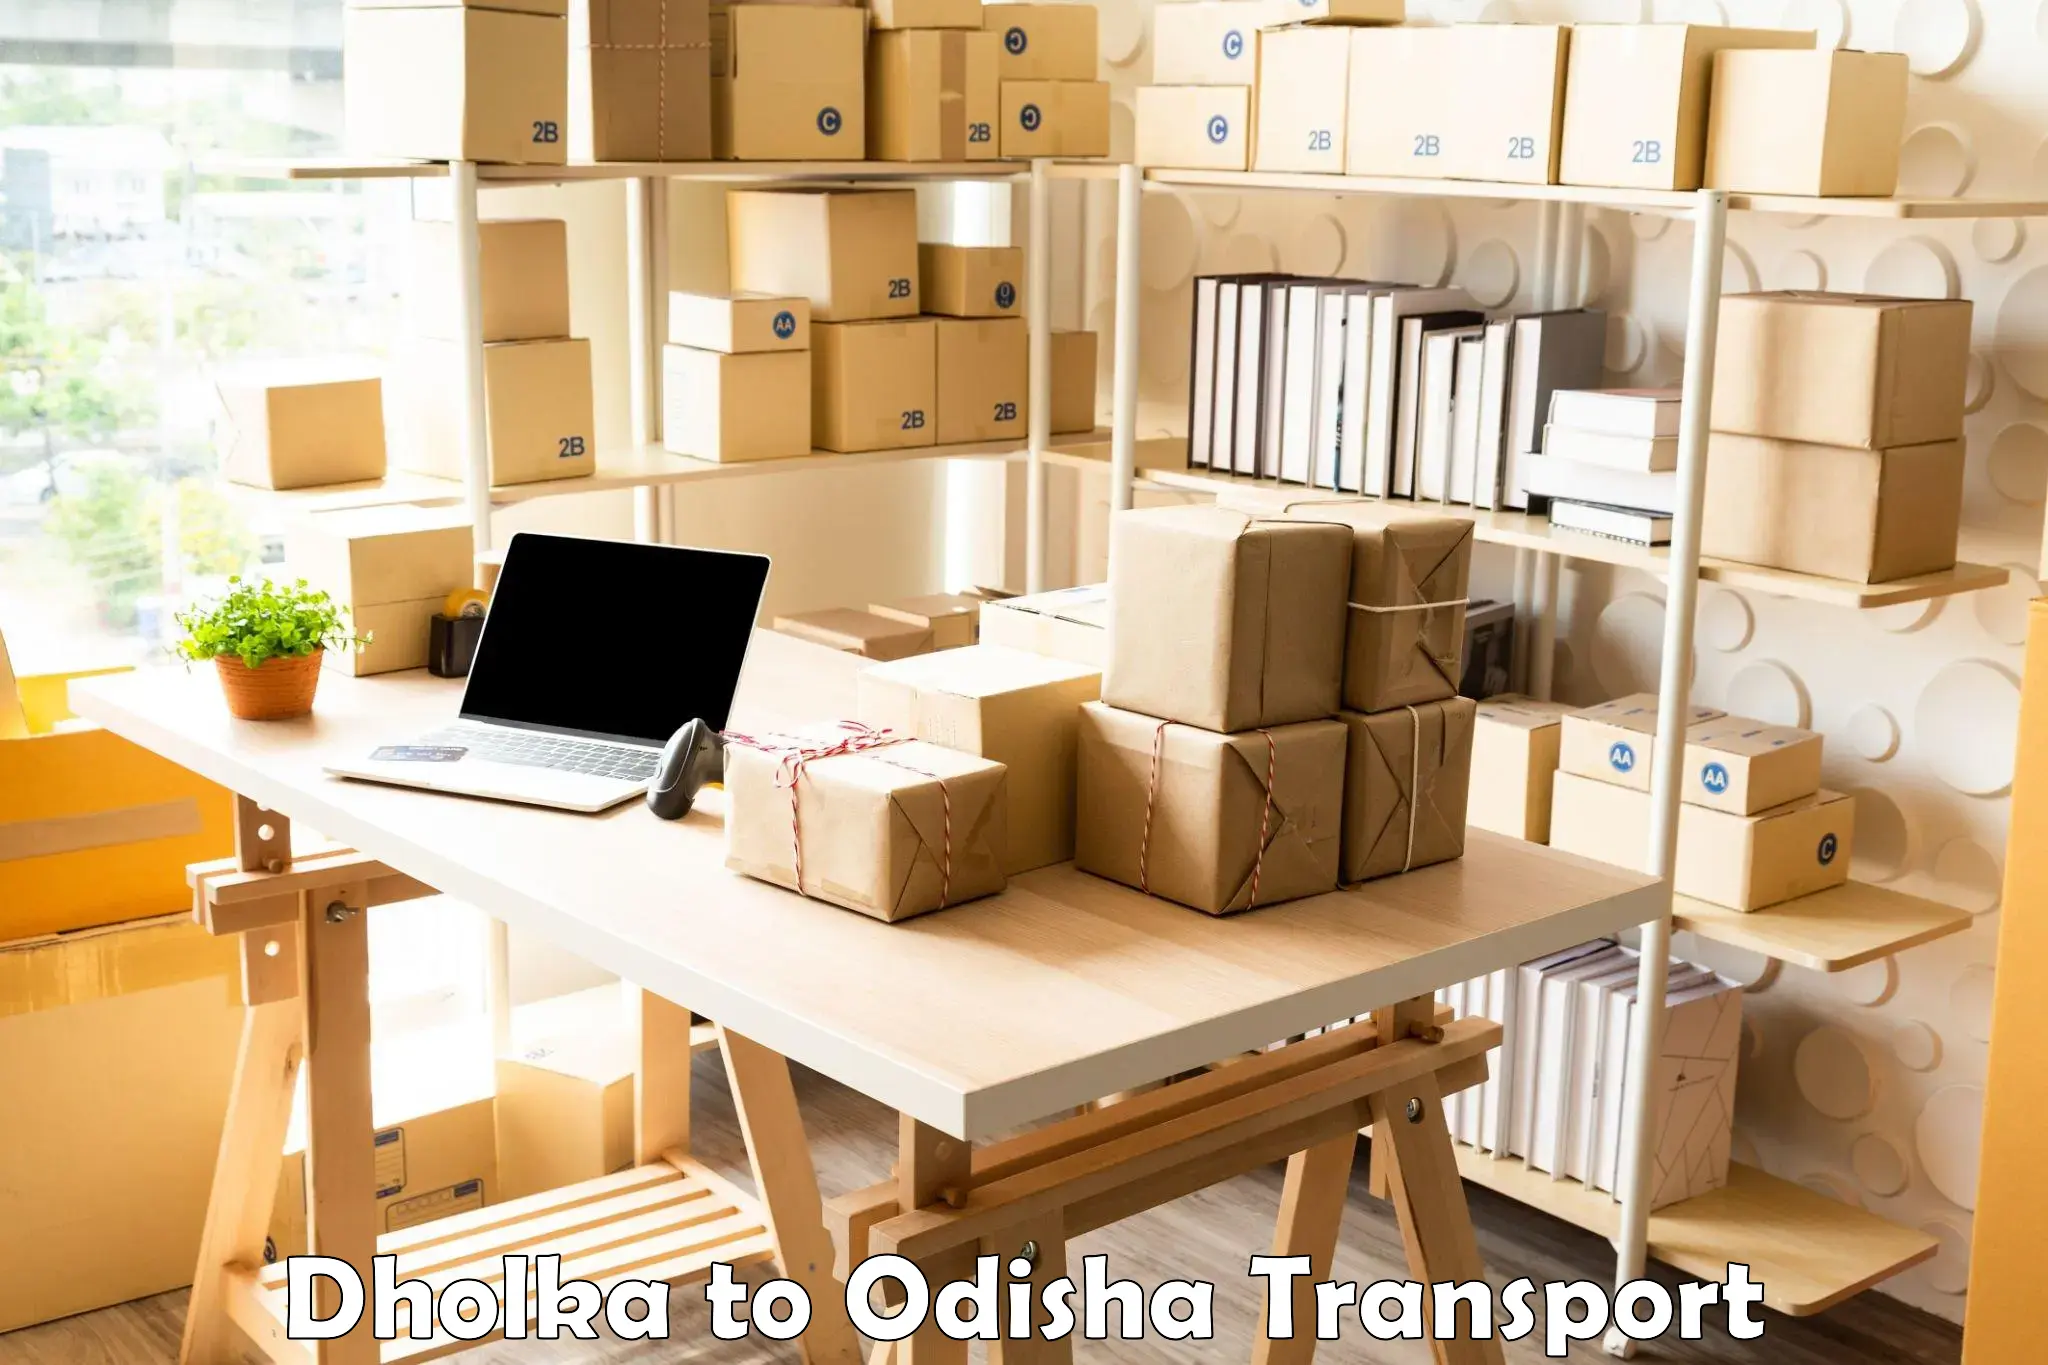 Commercial transport service Dholka to Bahalda